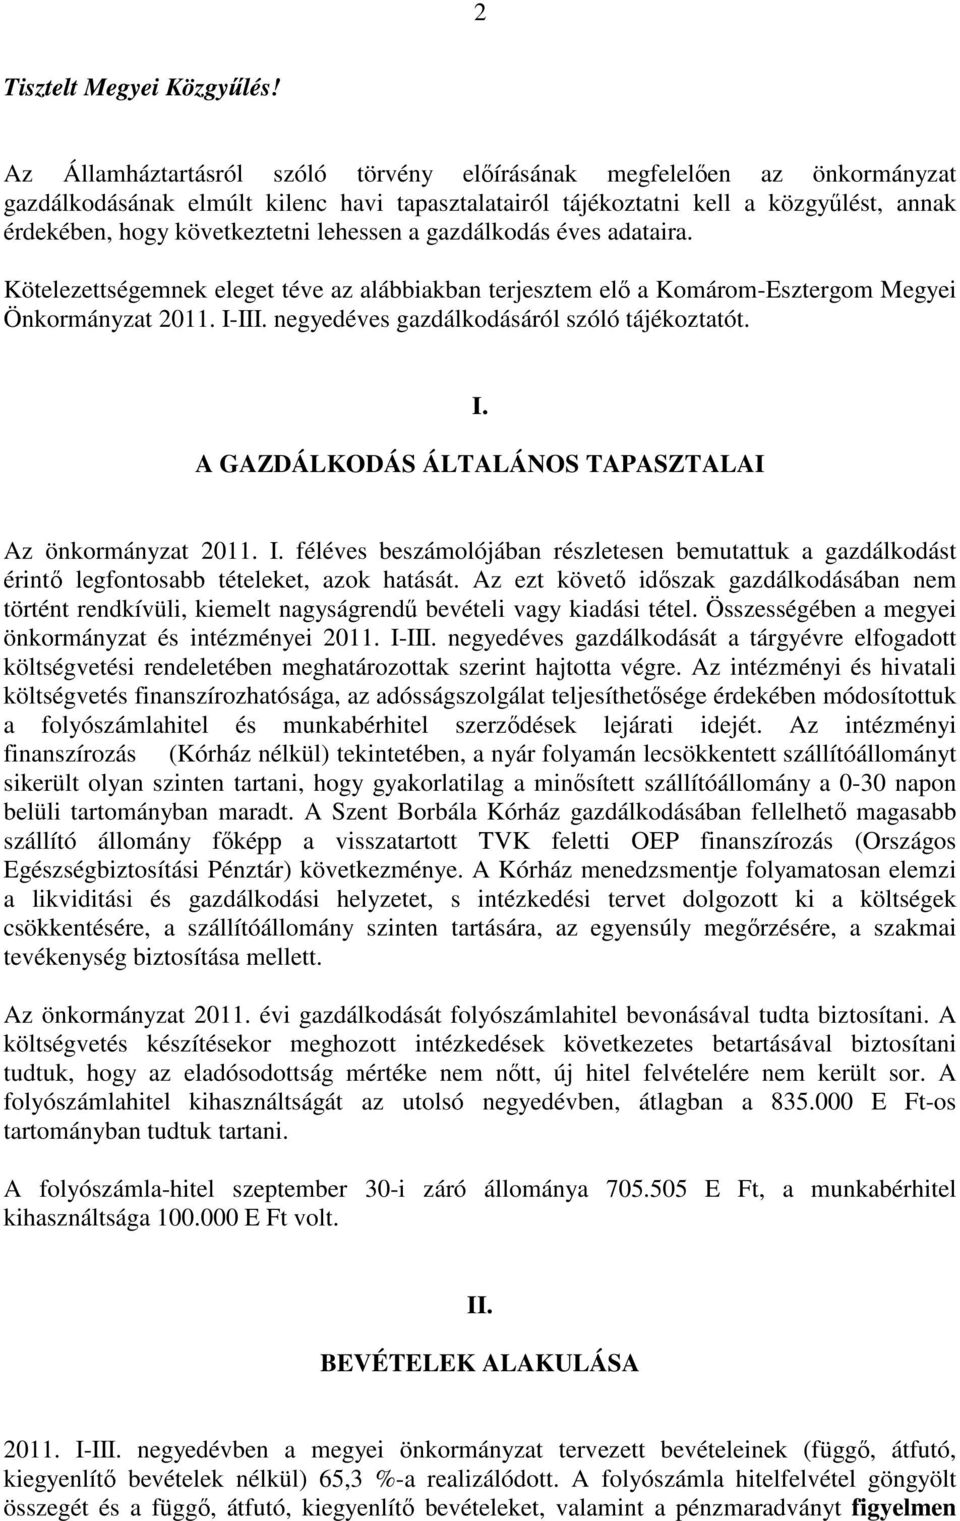 lehessen a gazdálkodás éves adataira. Kötelezettségemnek eleget téve az alábbiakban terjesztem elı a Komárom-Esztergom Megyei Önkormányzat 2011. I-III. negyedéves gazdálkodásáról szóló tájékoztatót.